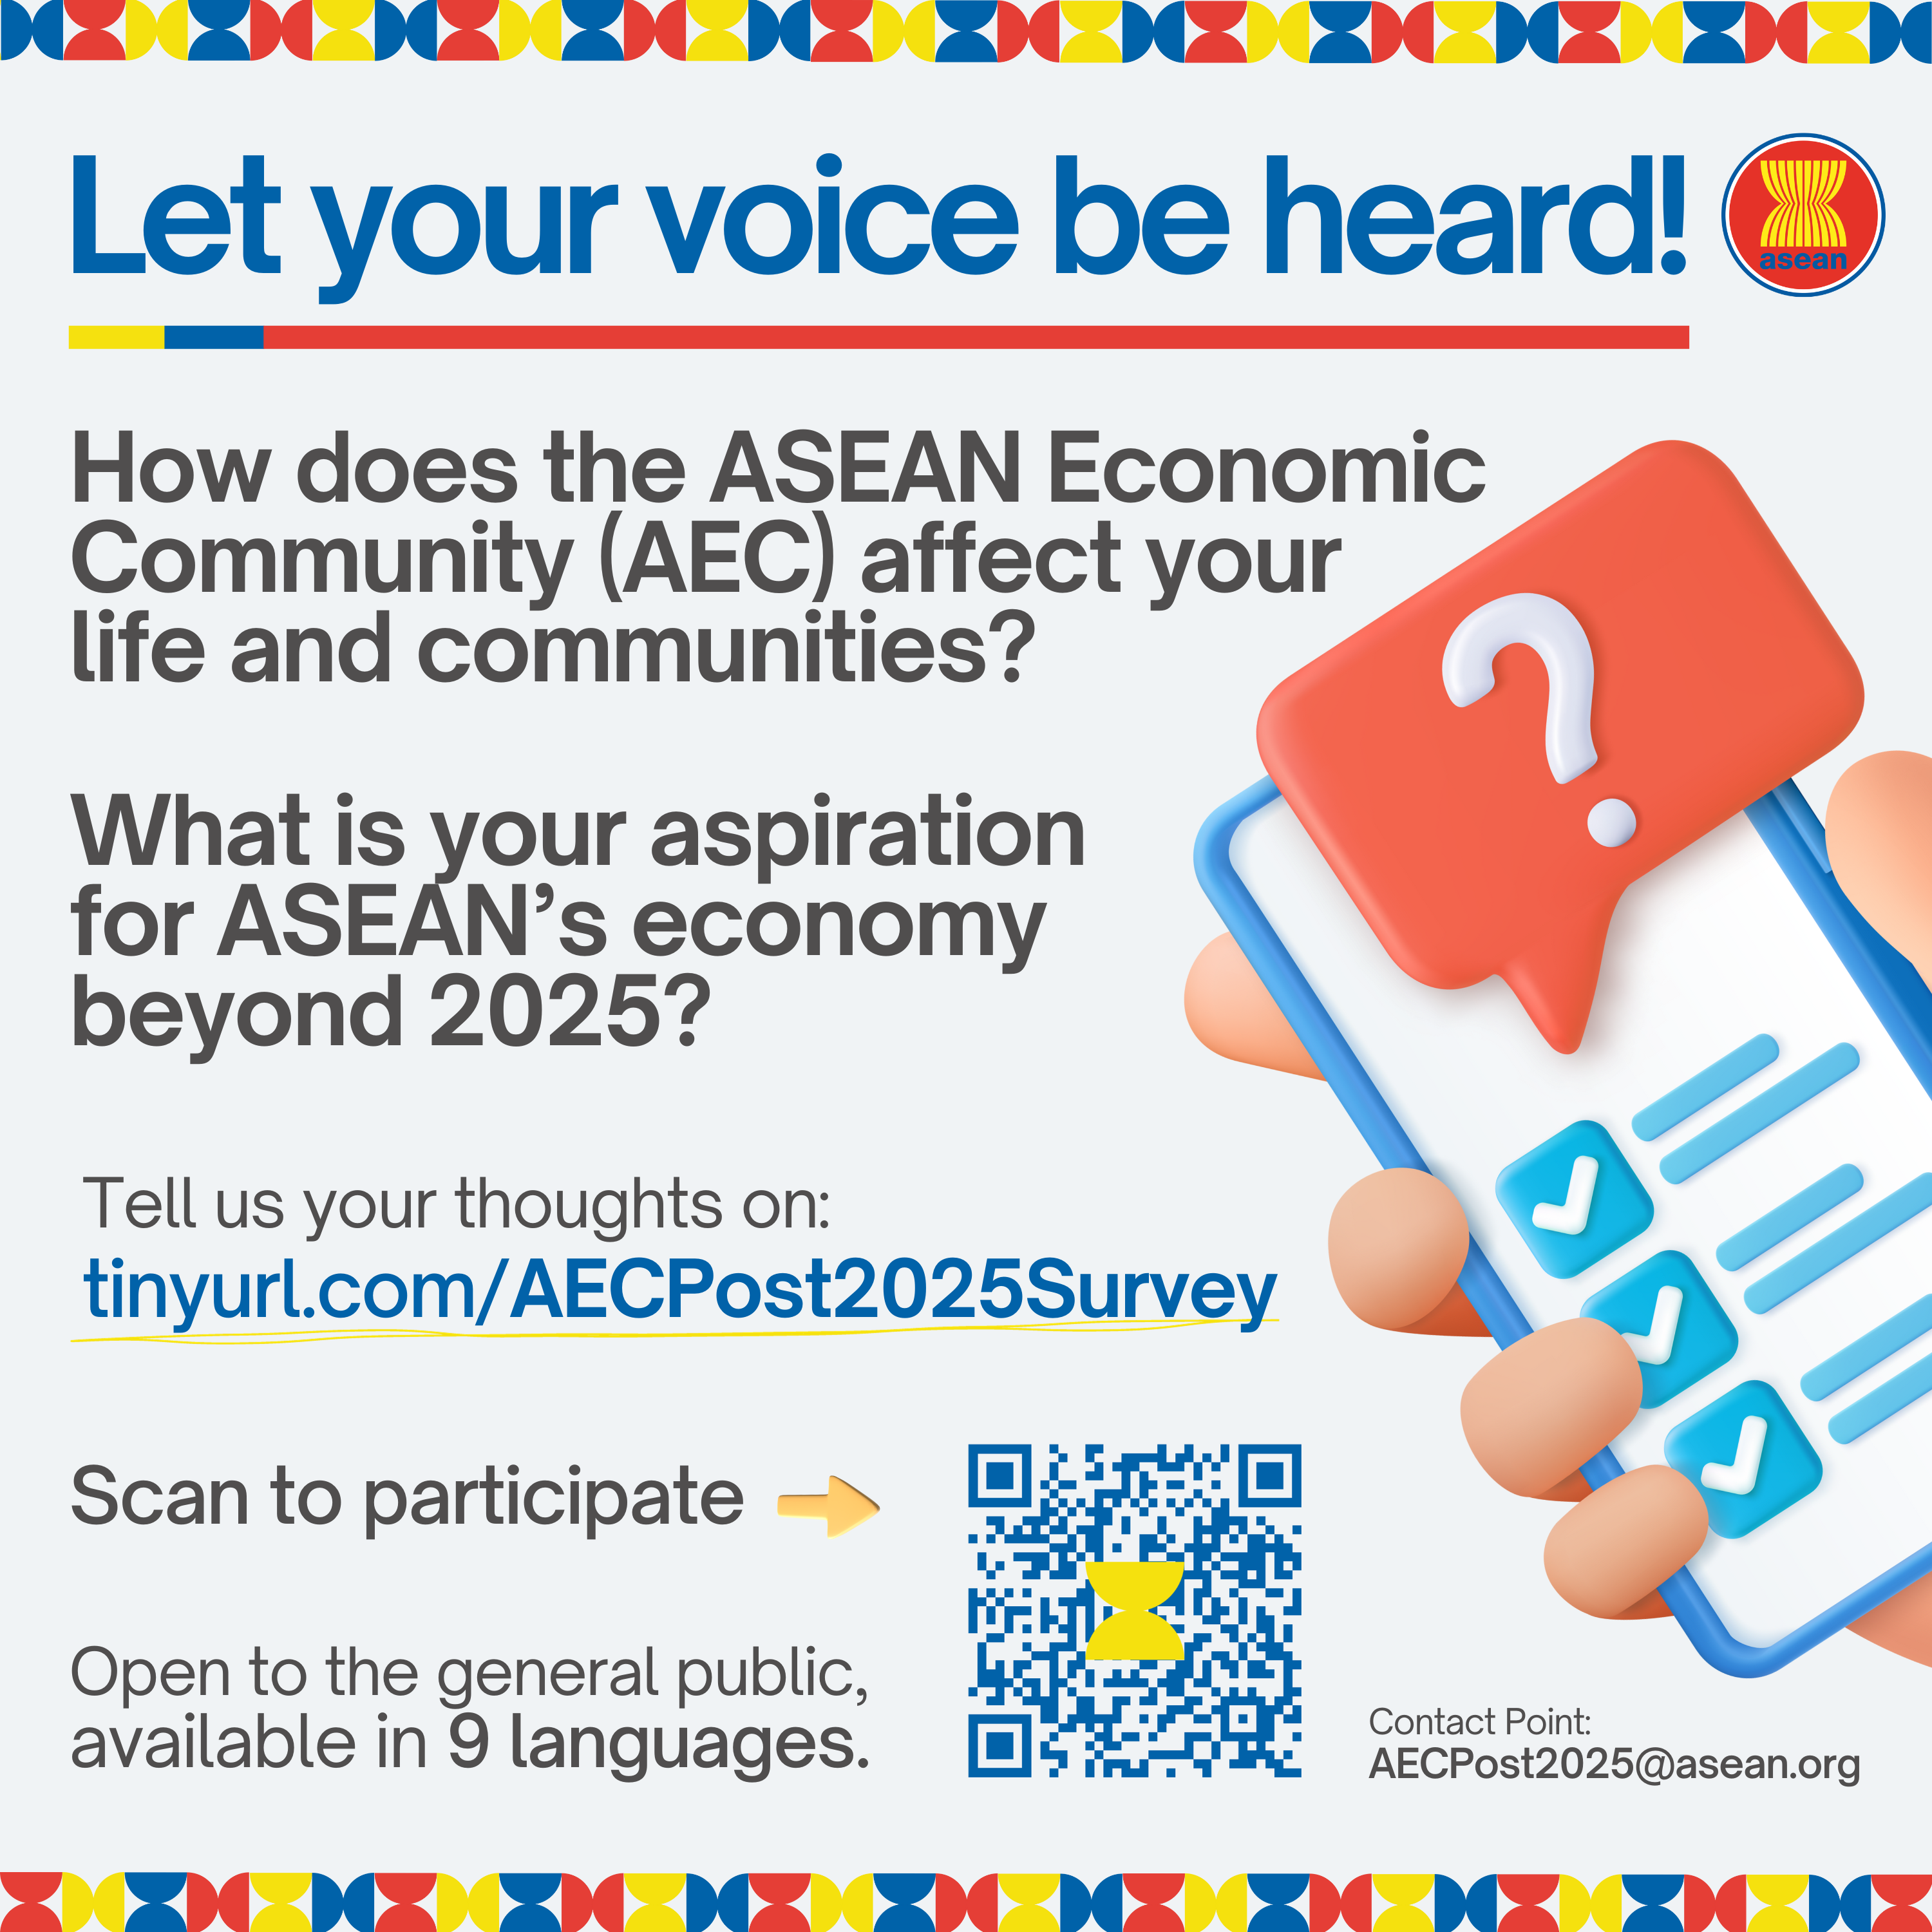 ការបើកដំណើរការកម្រងសំនួរស្ទាបស្ទង់មតិជាសាធារណៈស្ដីពី ASEAN Economic Community (AEC) 